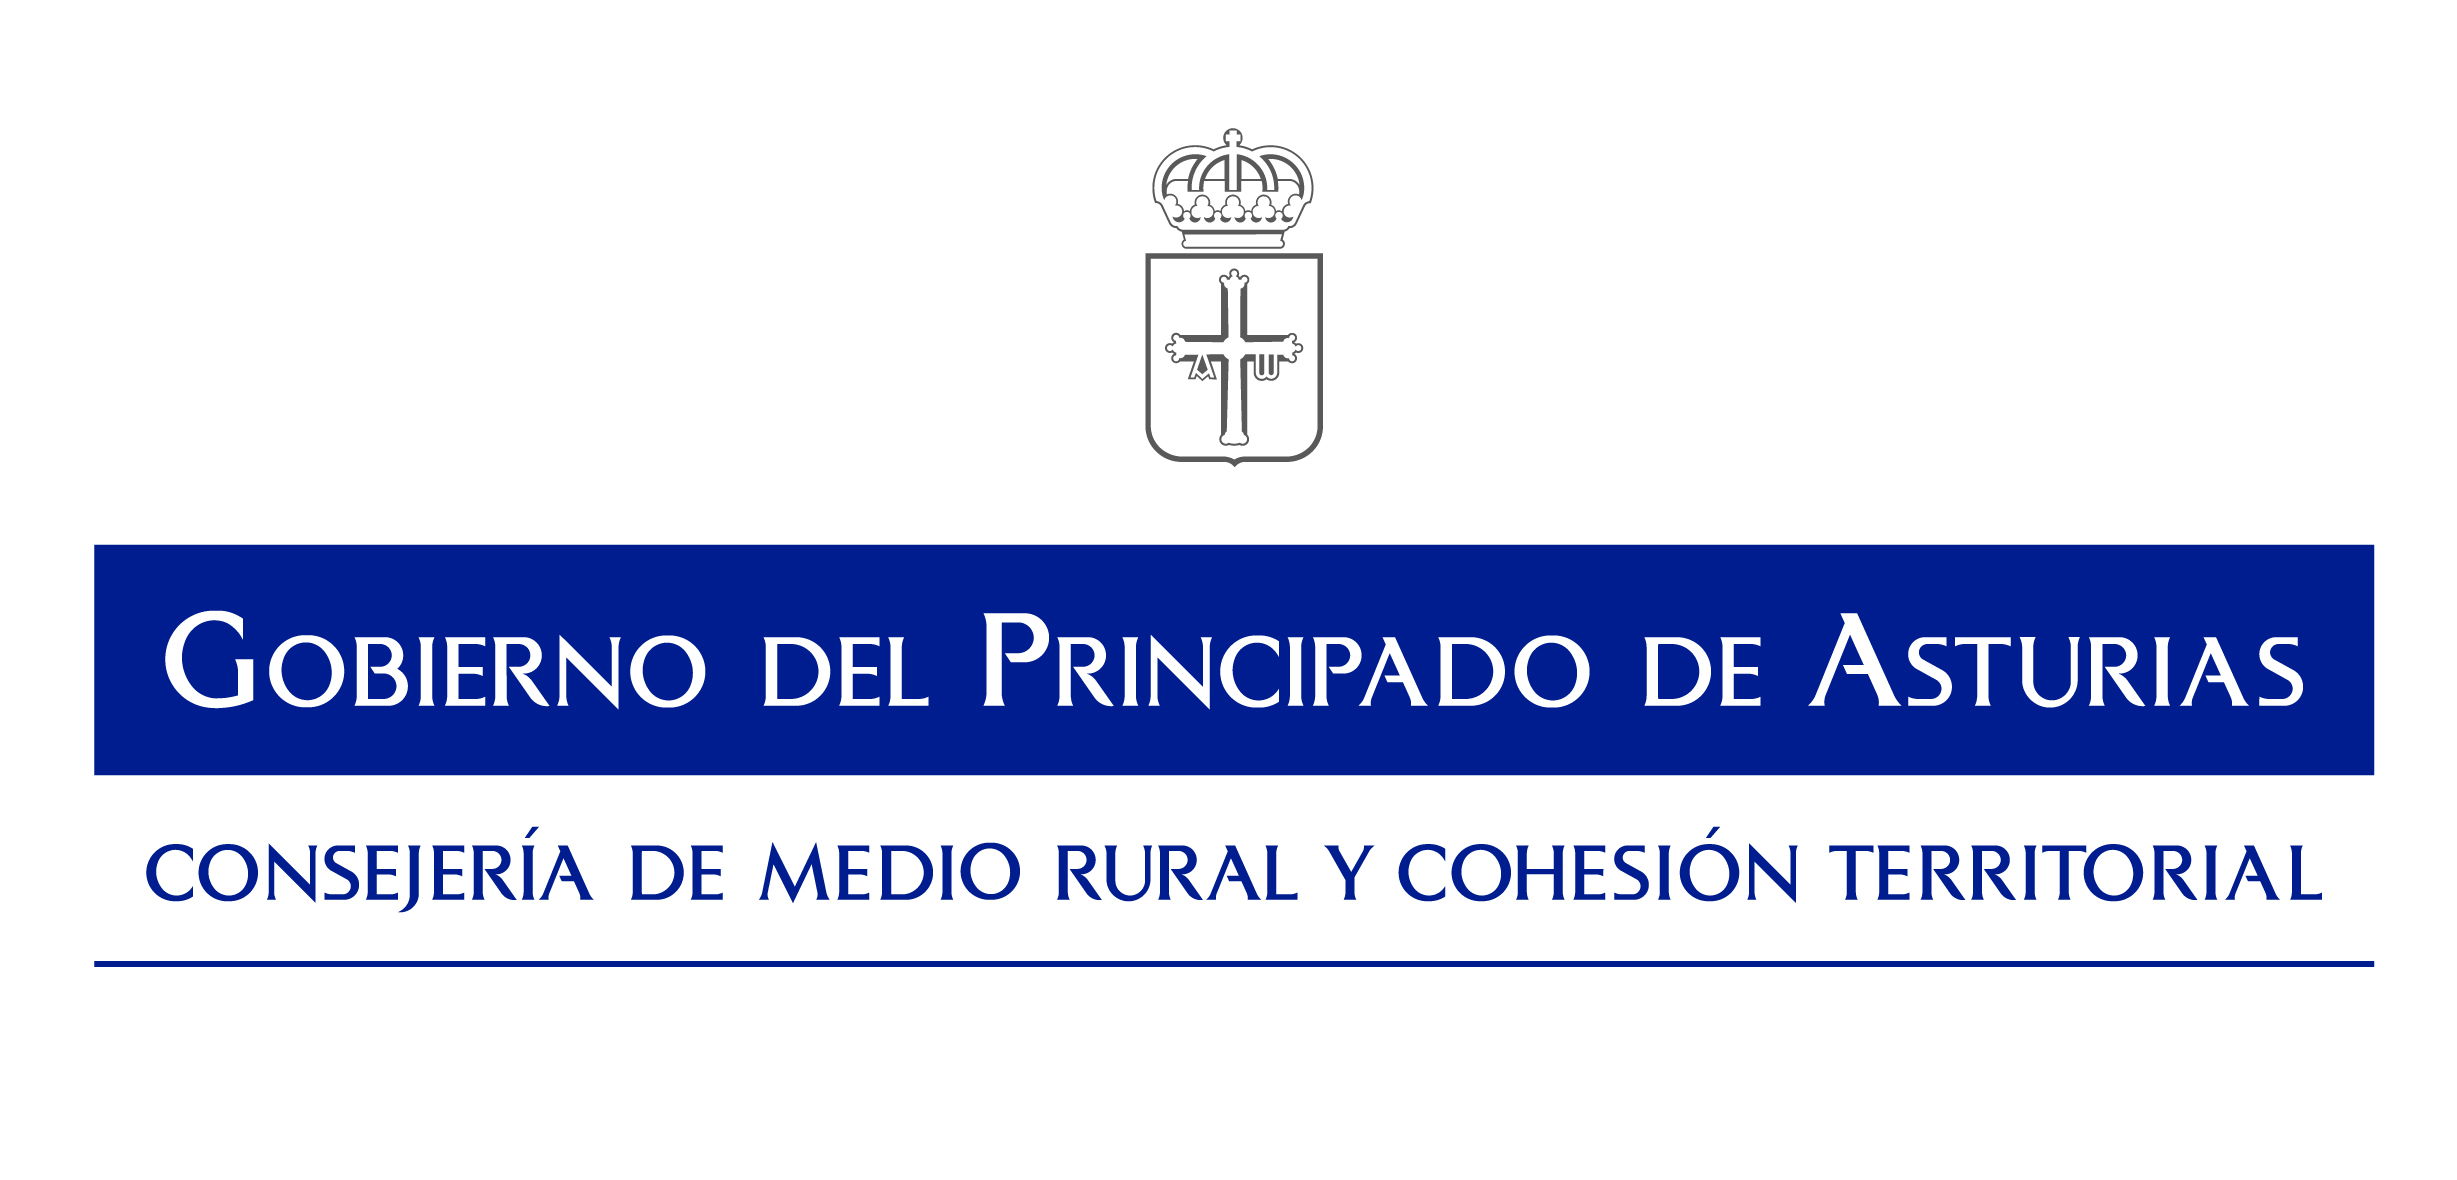 Conseyería de mediu rural y cohesión territorial